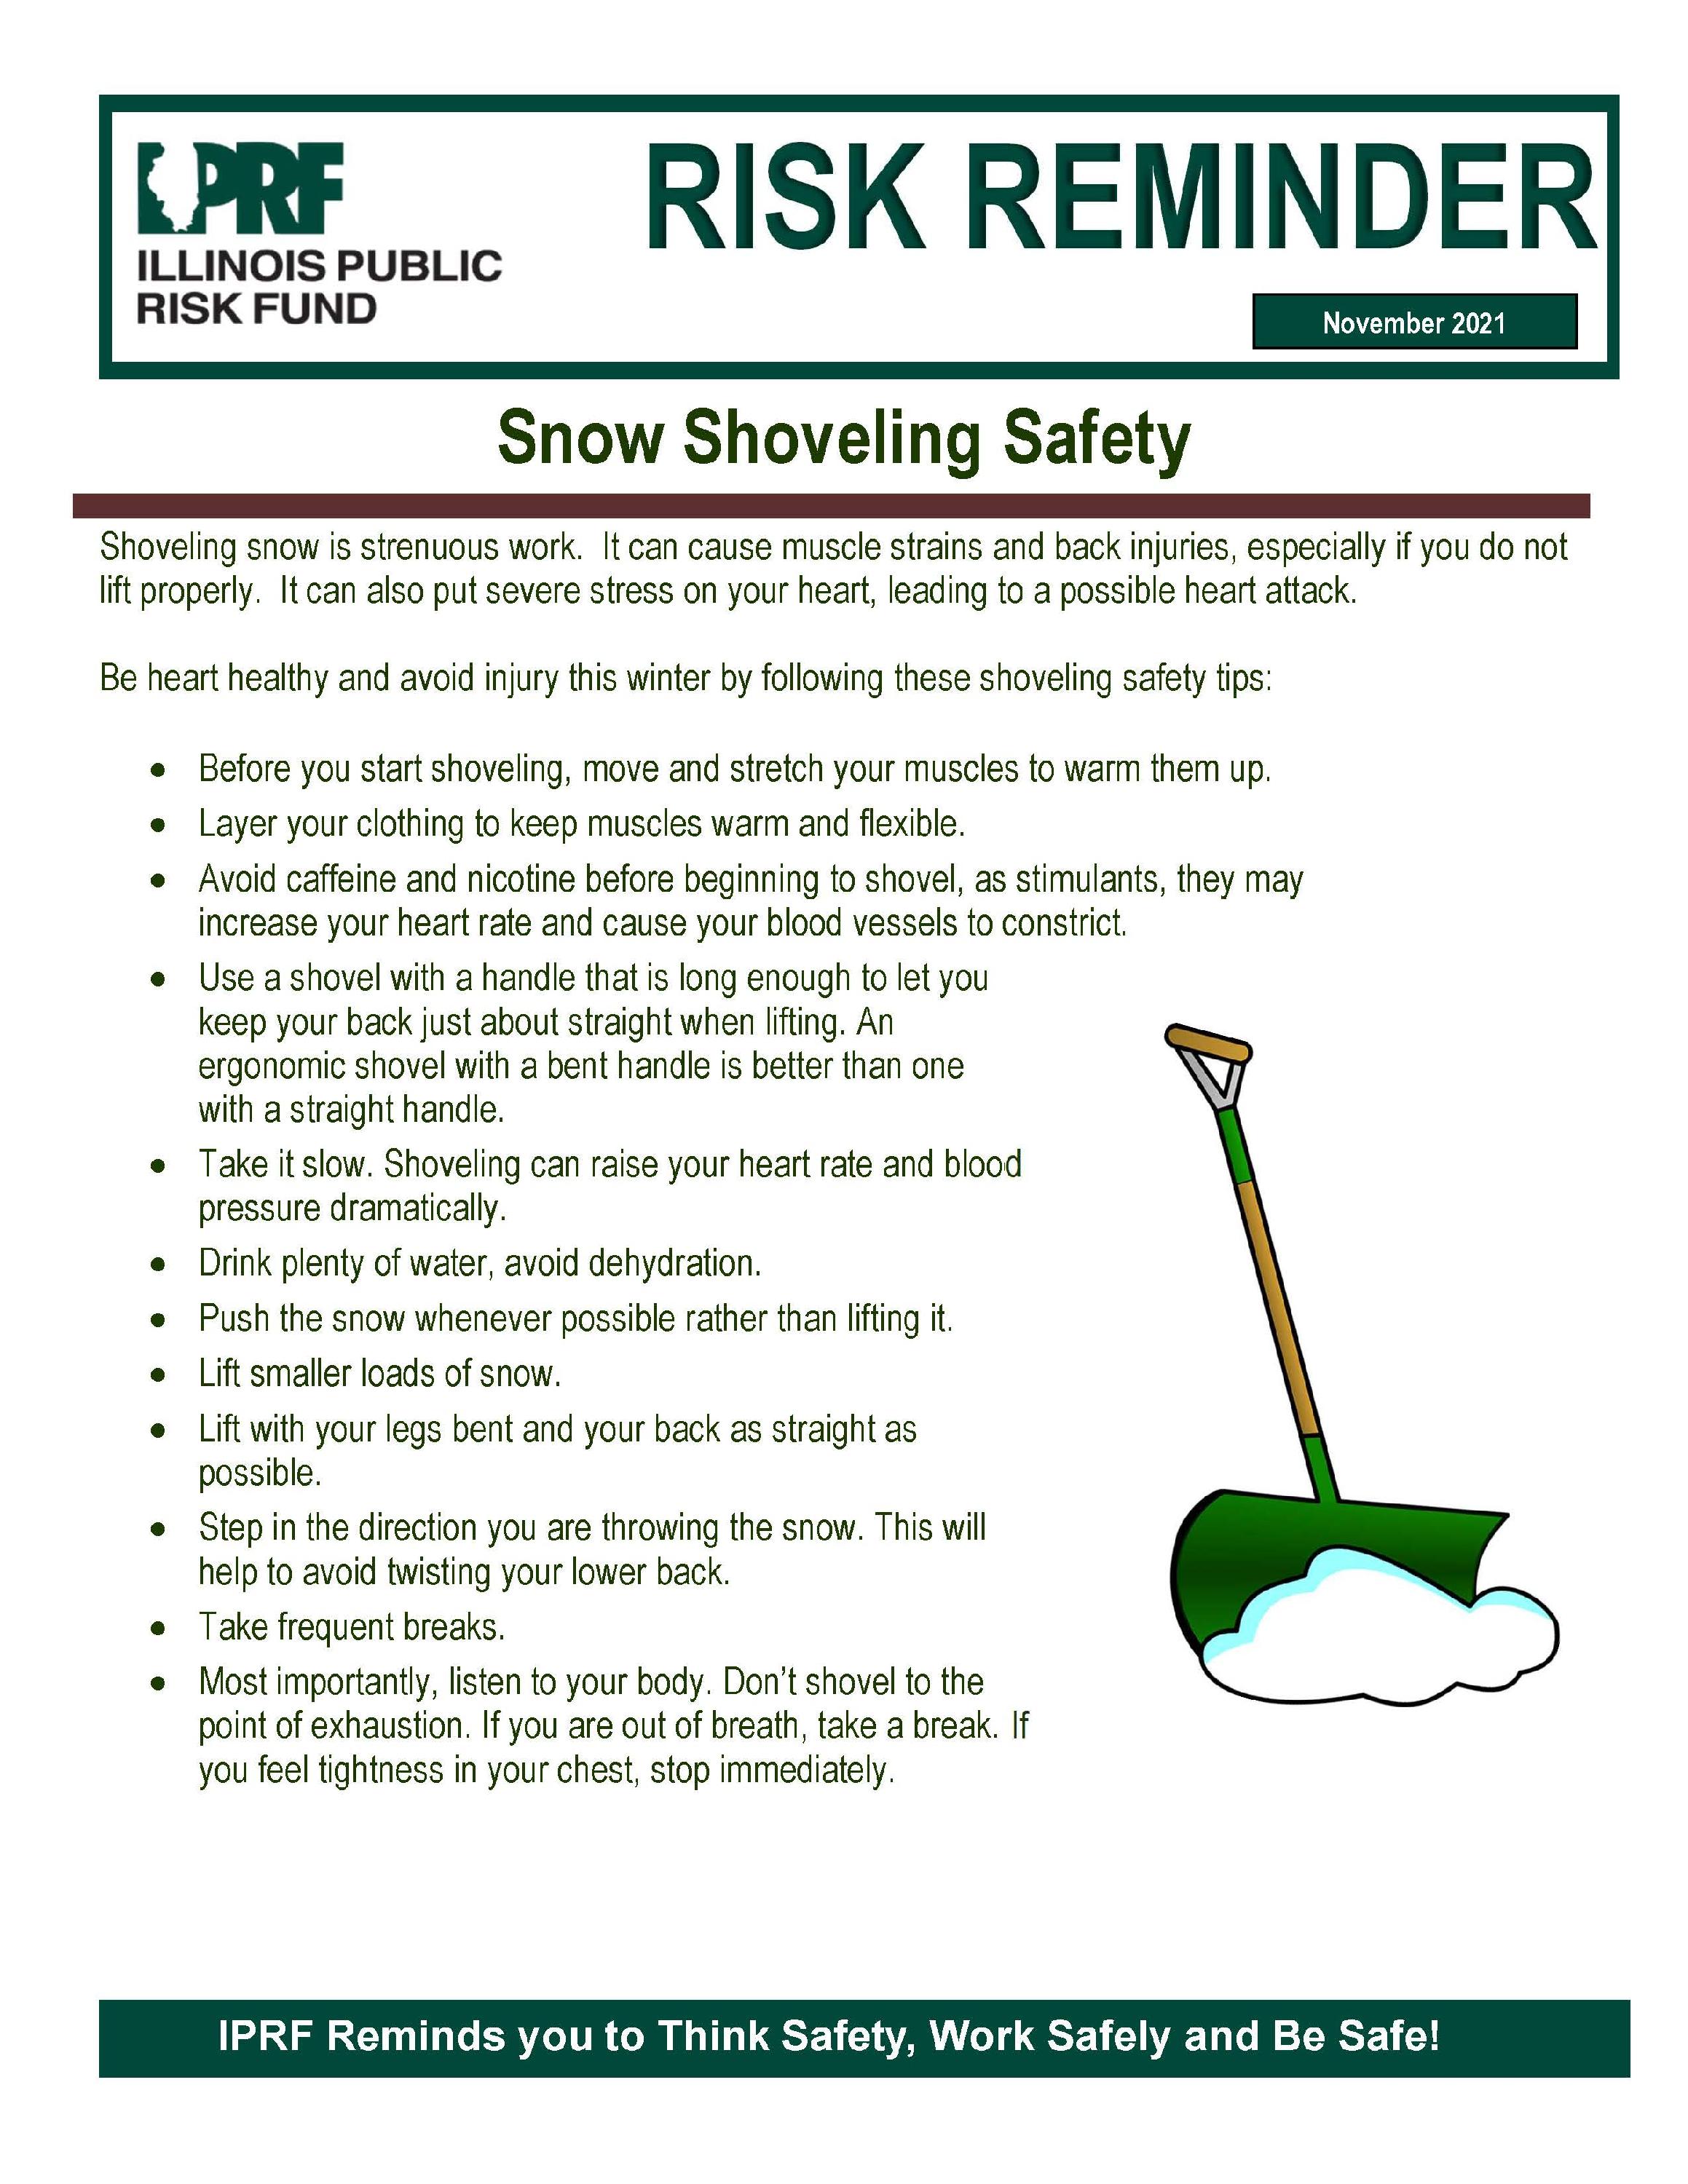 iprf_snow-shoveling-safety-11.21